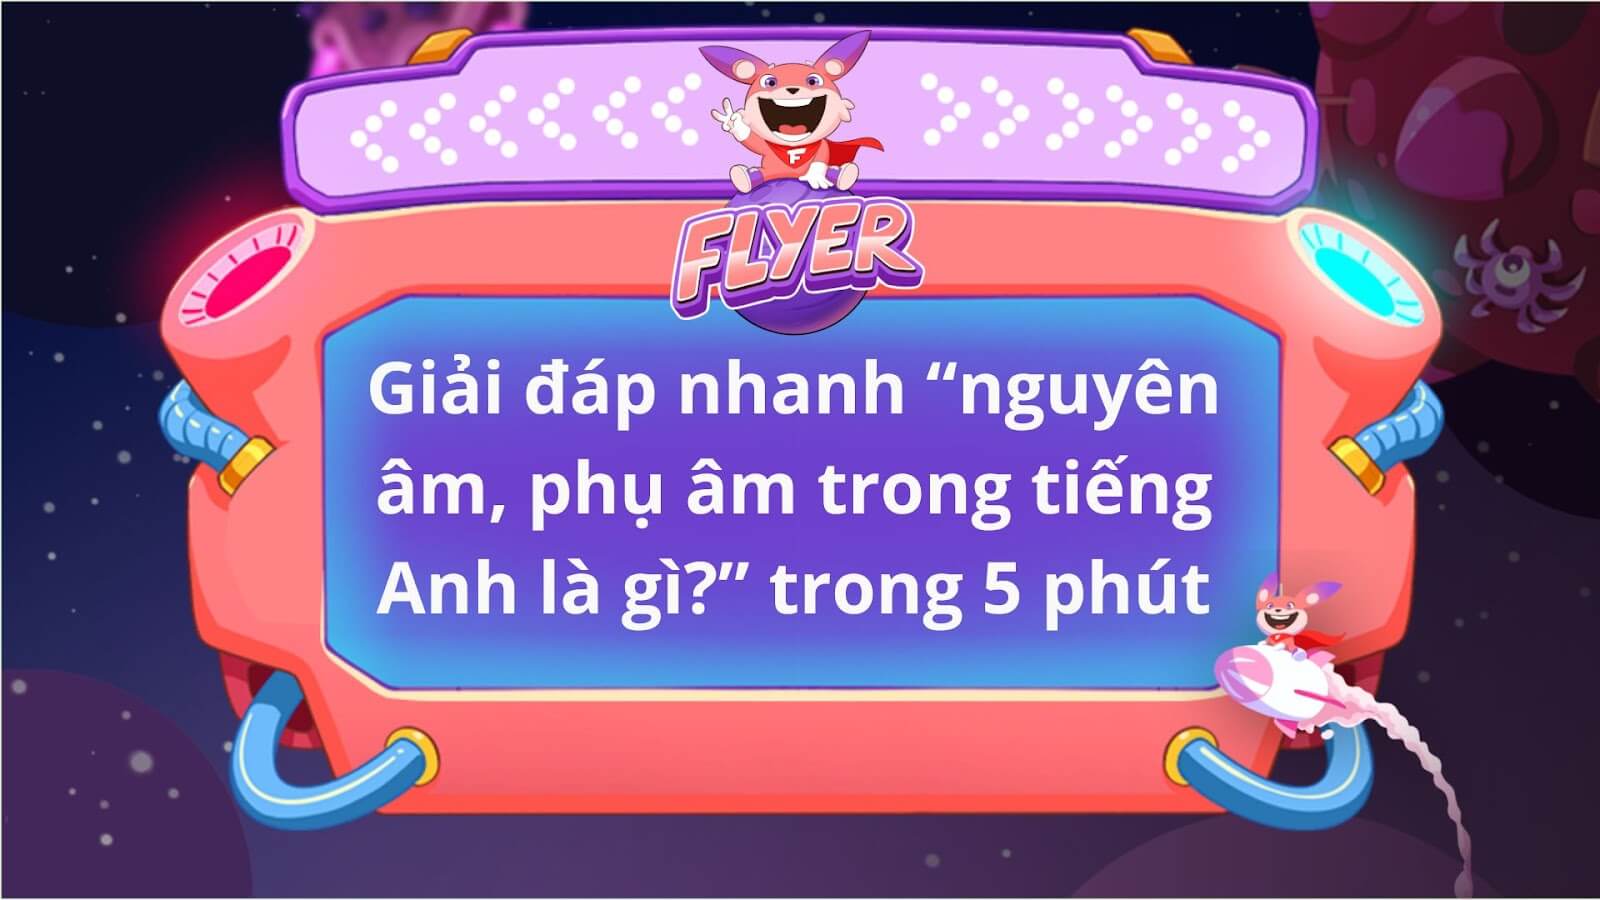 Phụ âm trong tiếng Việt và tiếng Anh có sự khác biệt không?
